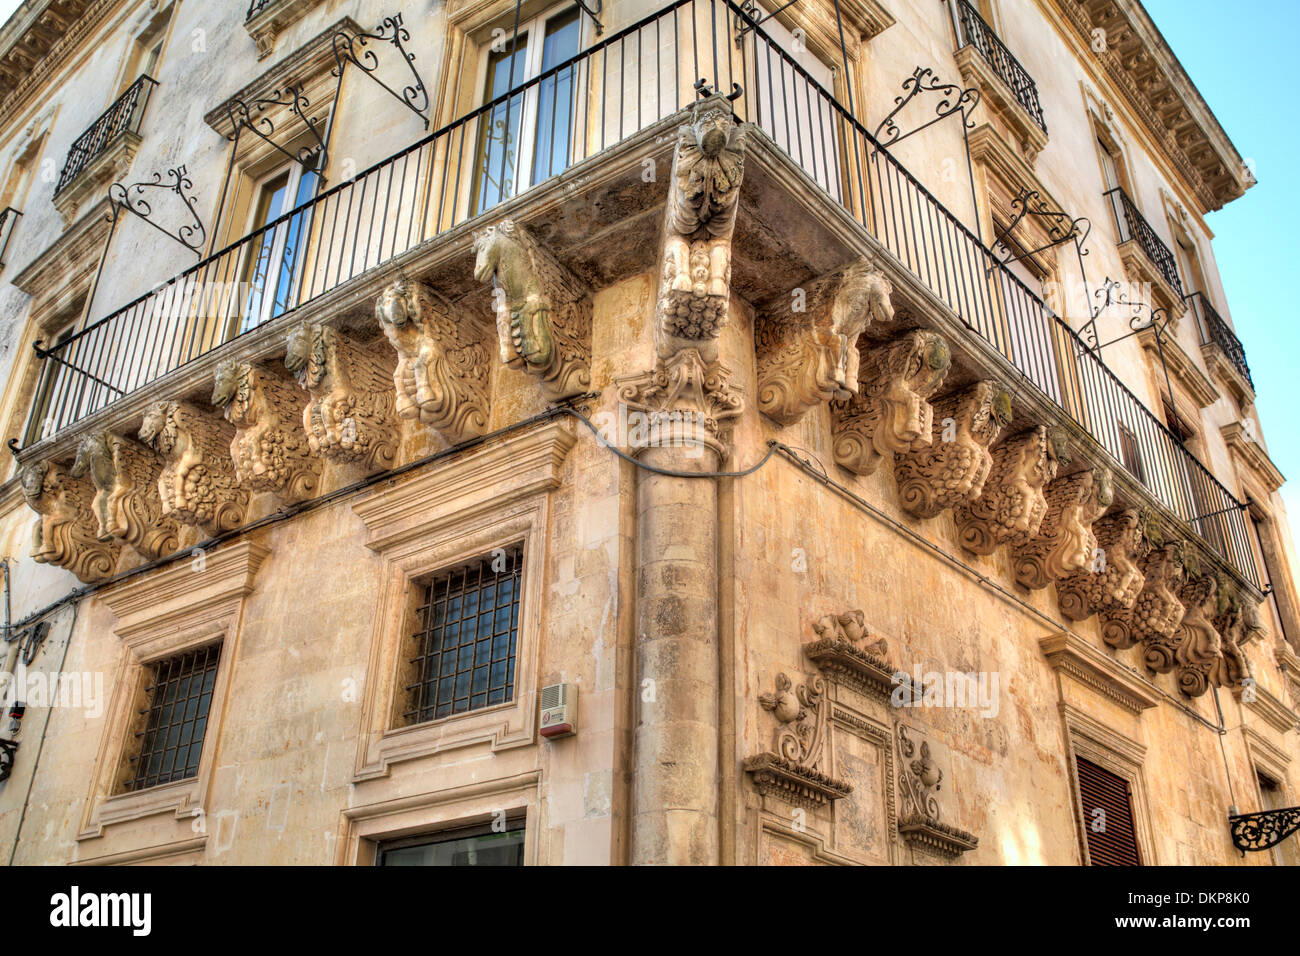 Maison Renaissance avec des sculptures sous balcon, Lecce, Pouilles, Italie Banque D'Images